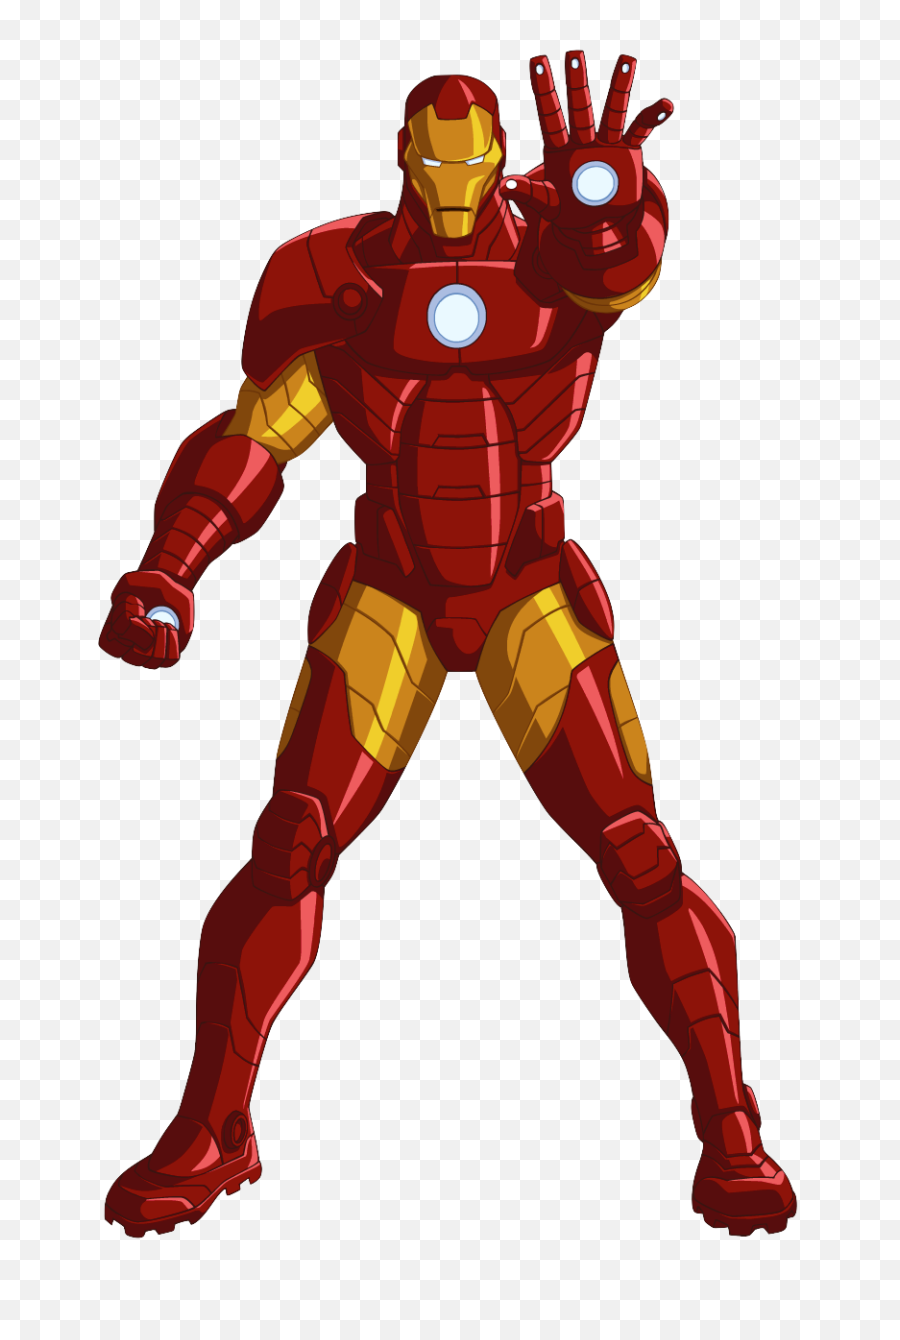 Png Meaning Iron Man Logo And Symbol - Iron Man Suit Cartoon,Iron Man Symbol Png